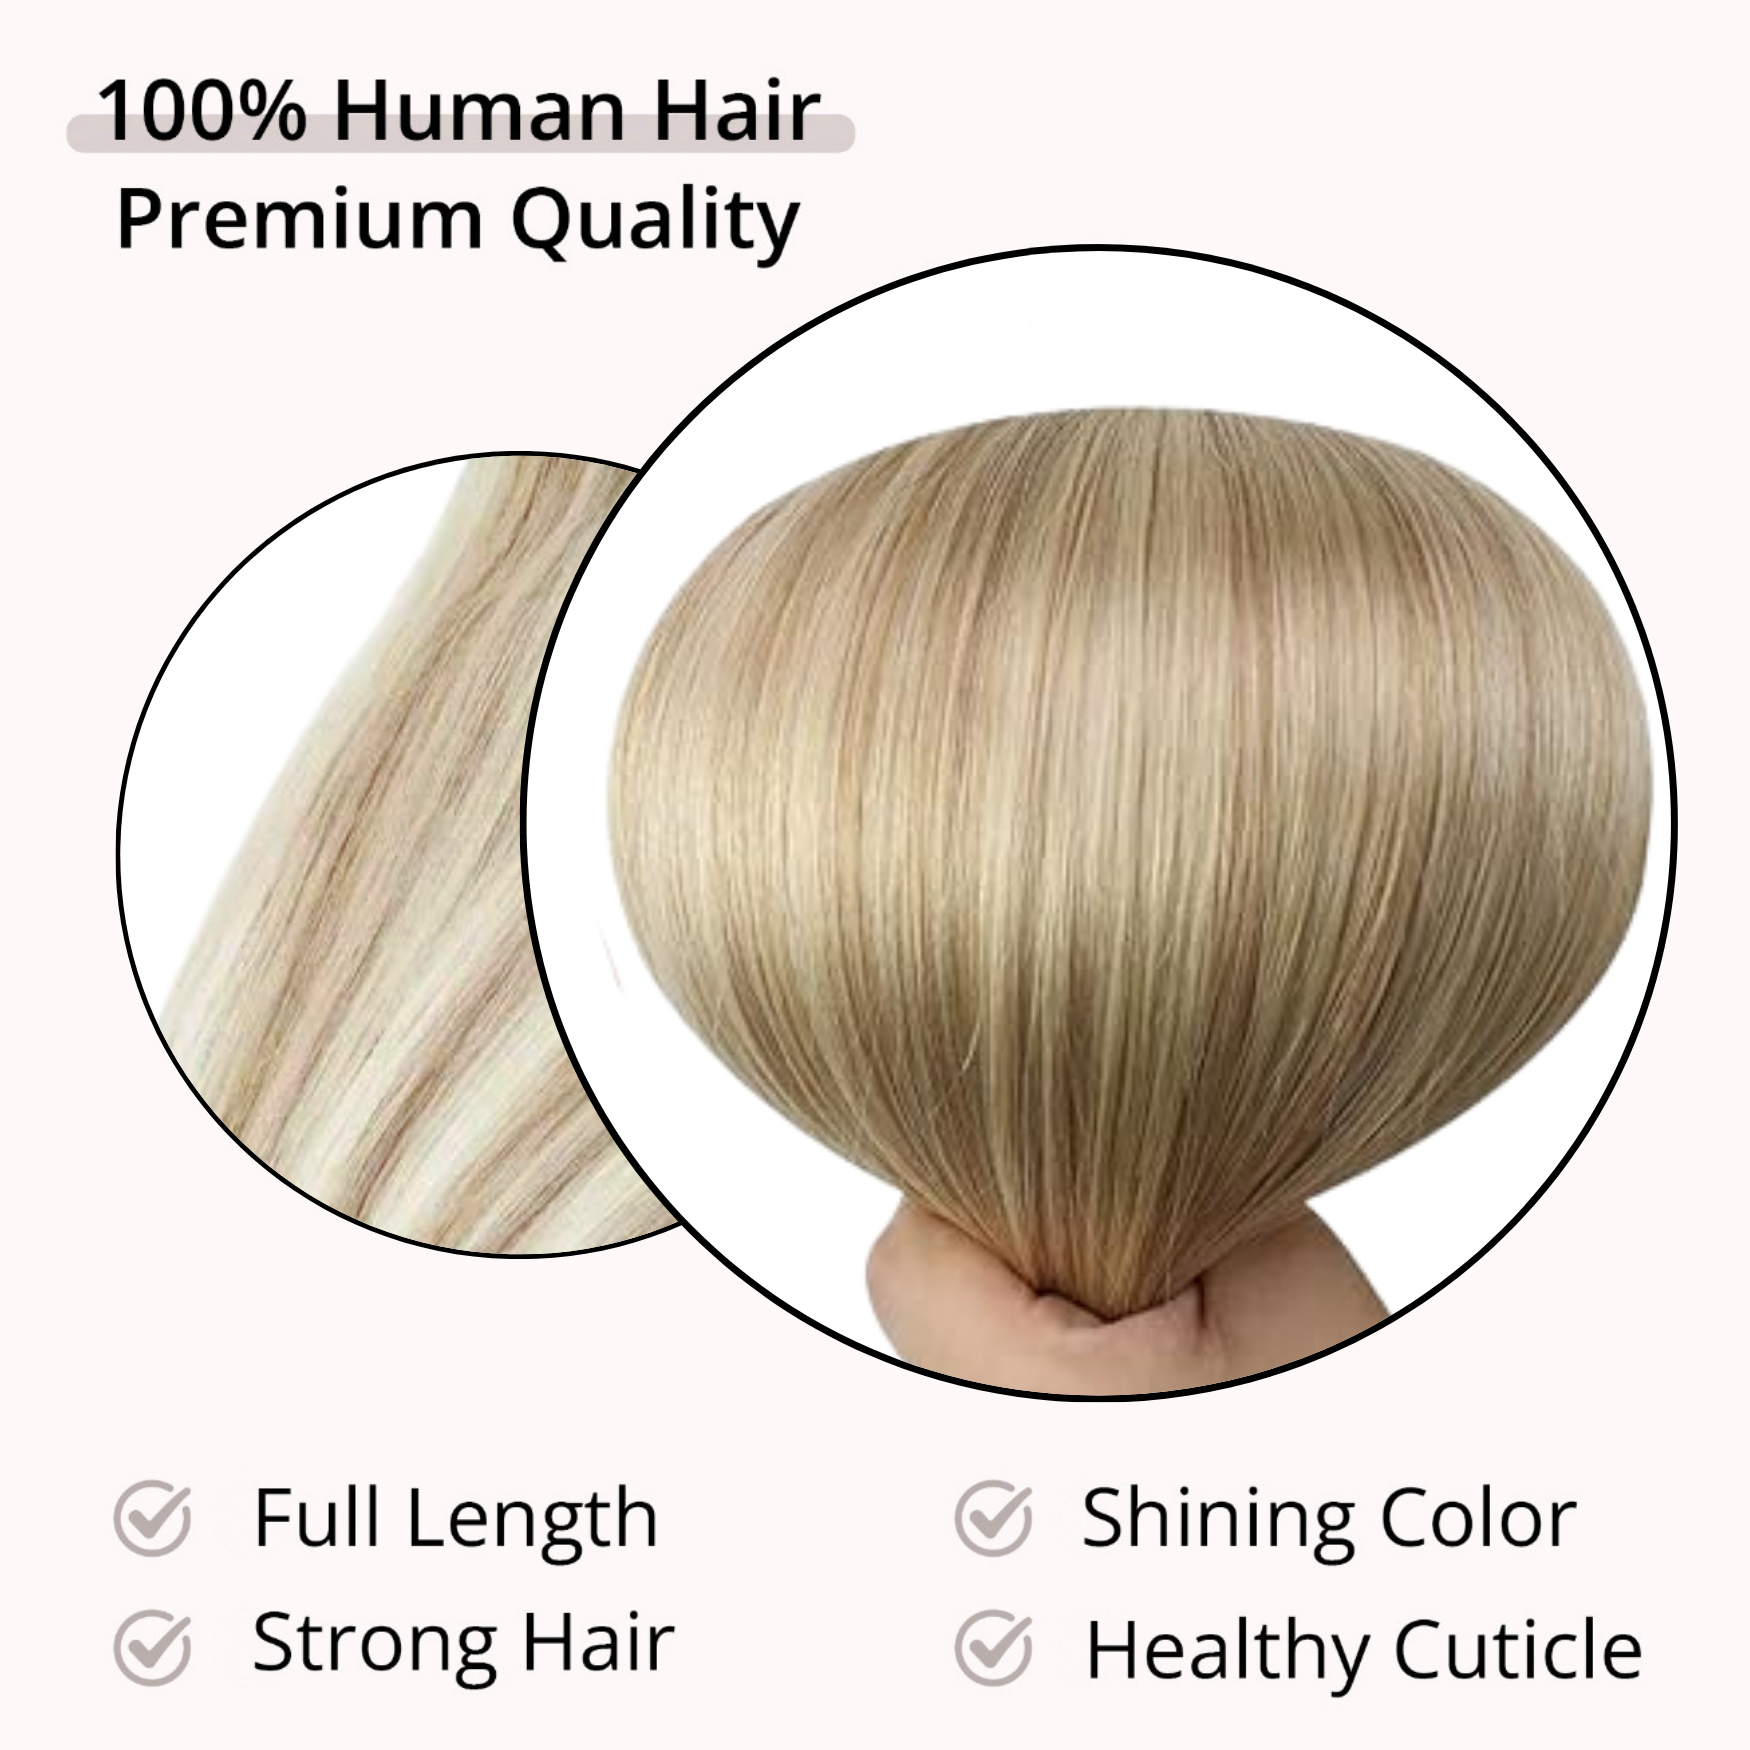 WIGI Premium Clip in Hair Extensions - Human Hair